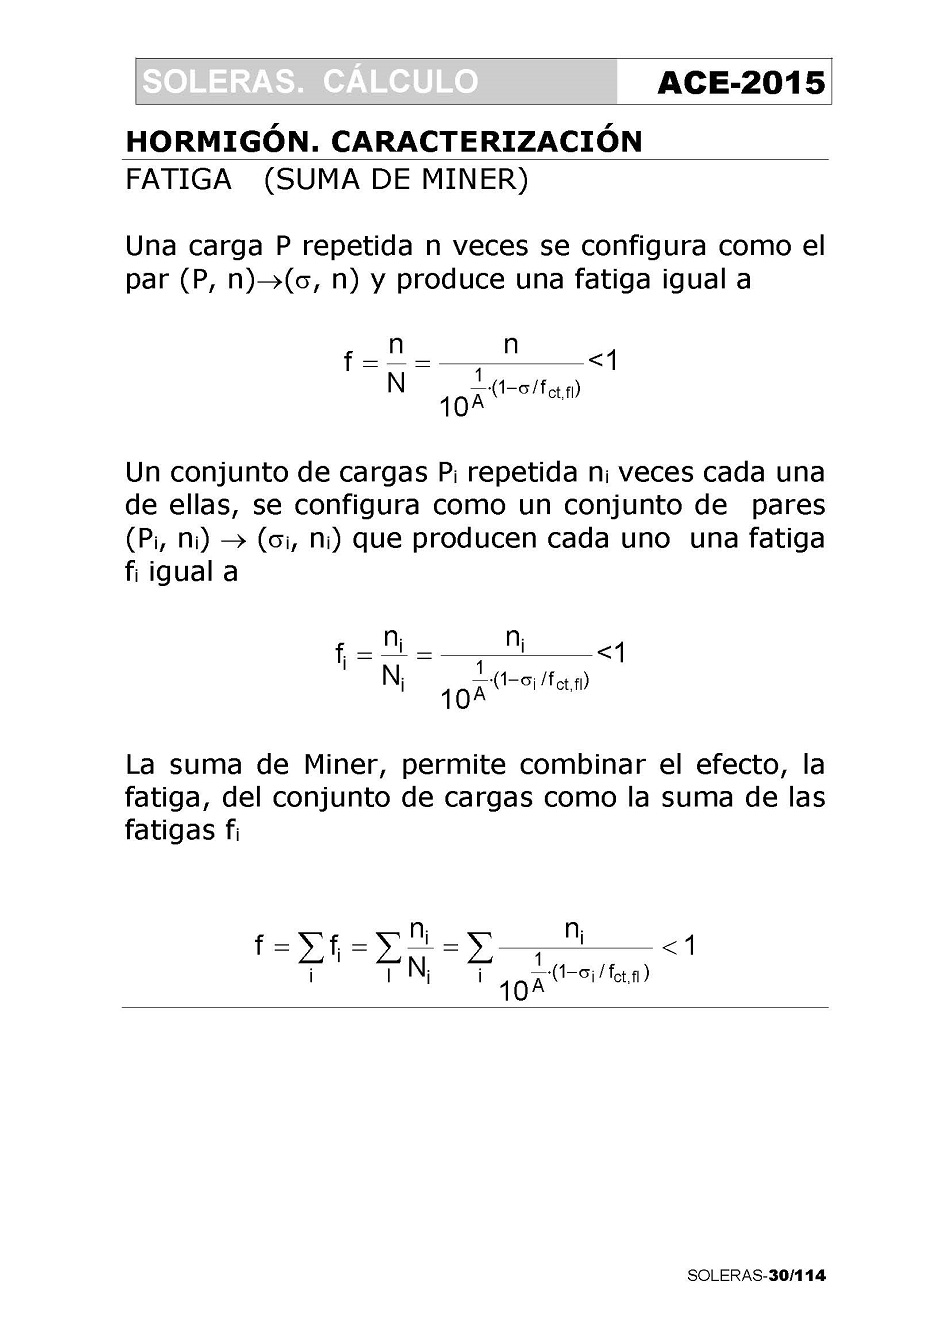 Cálculo de Soleras de Hormigón. Página 30